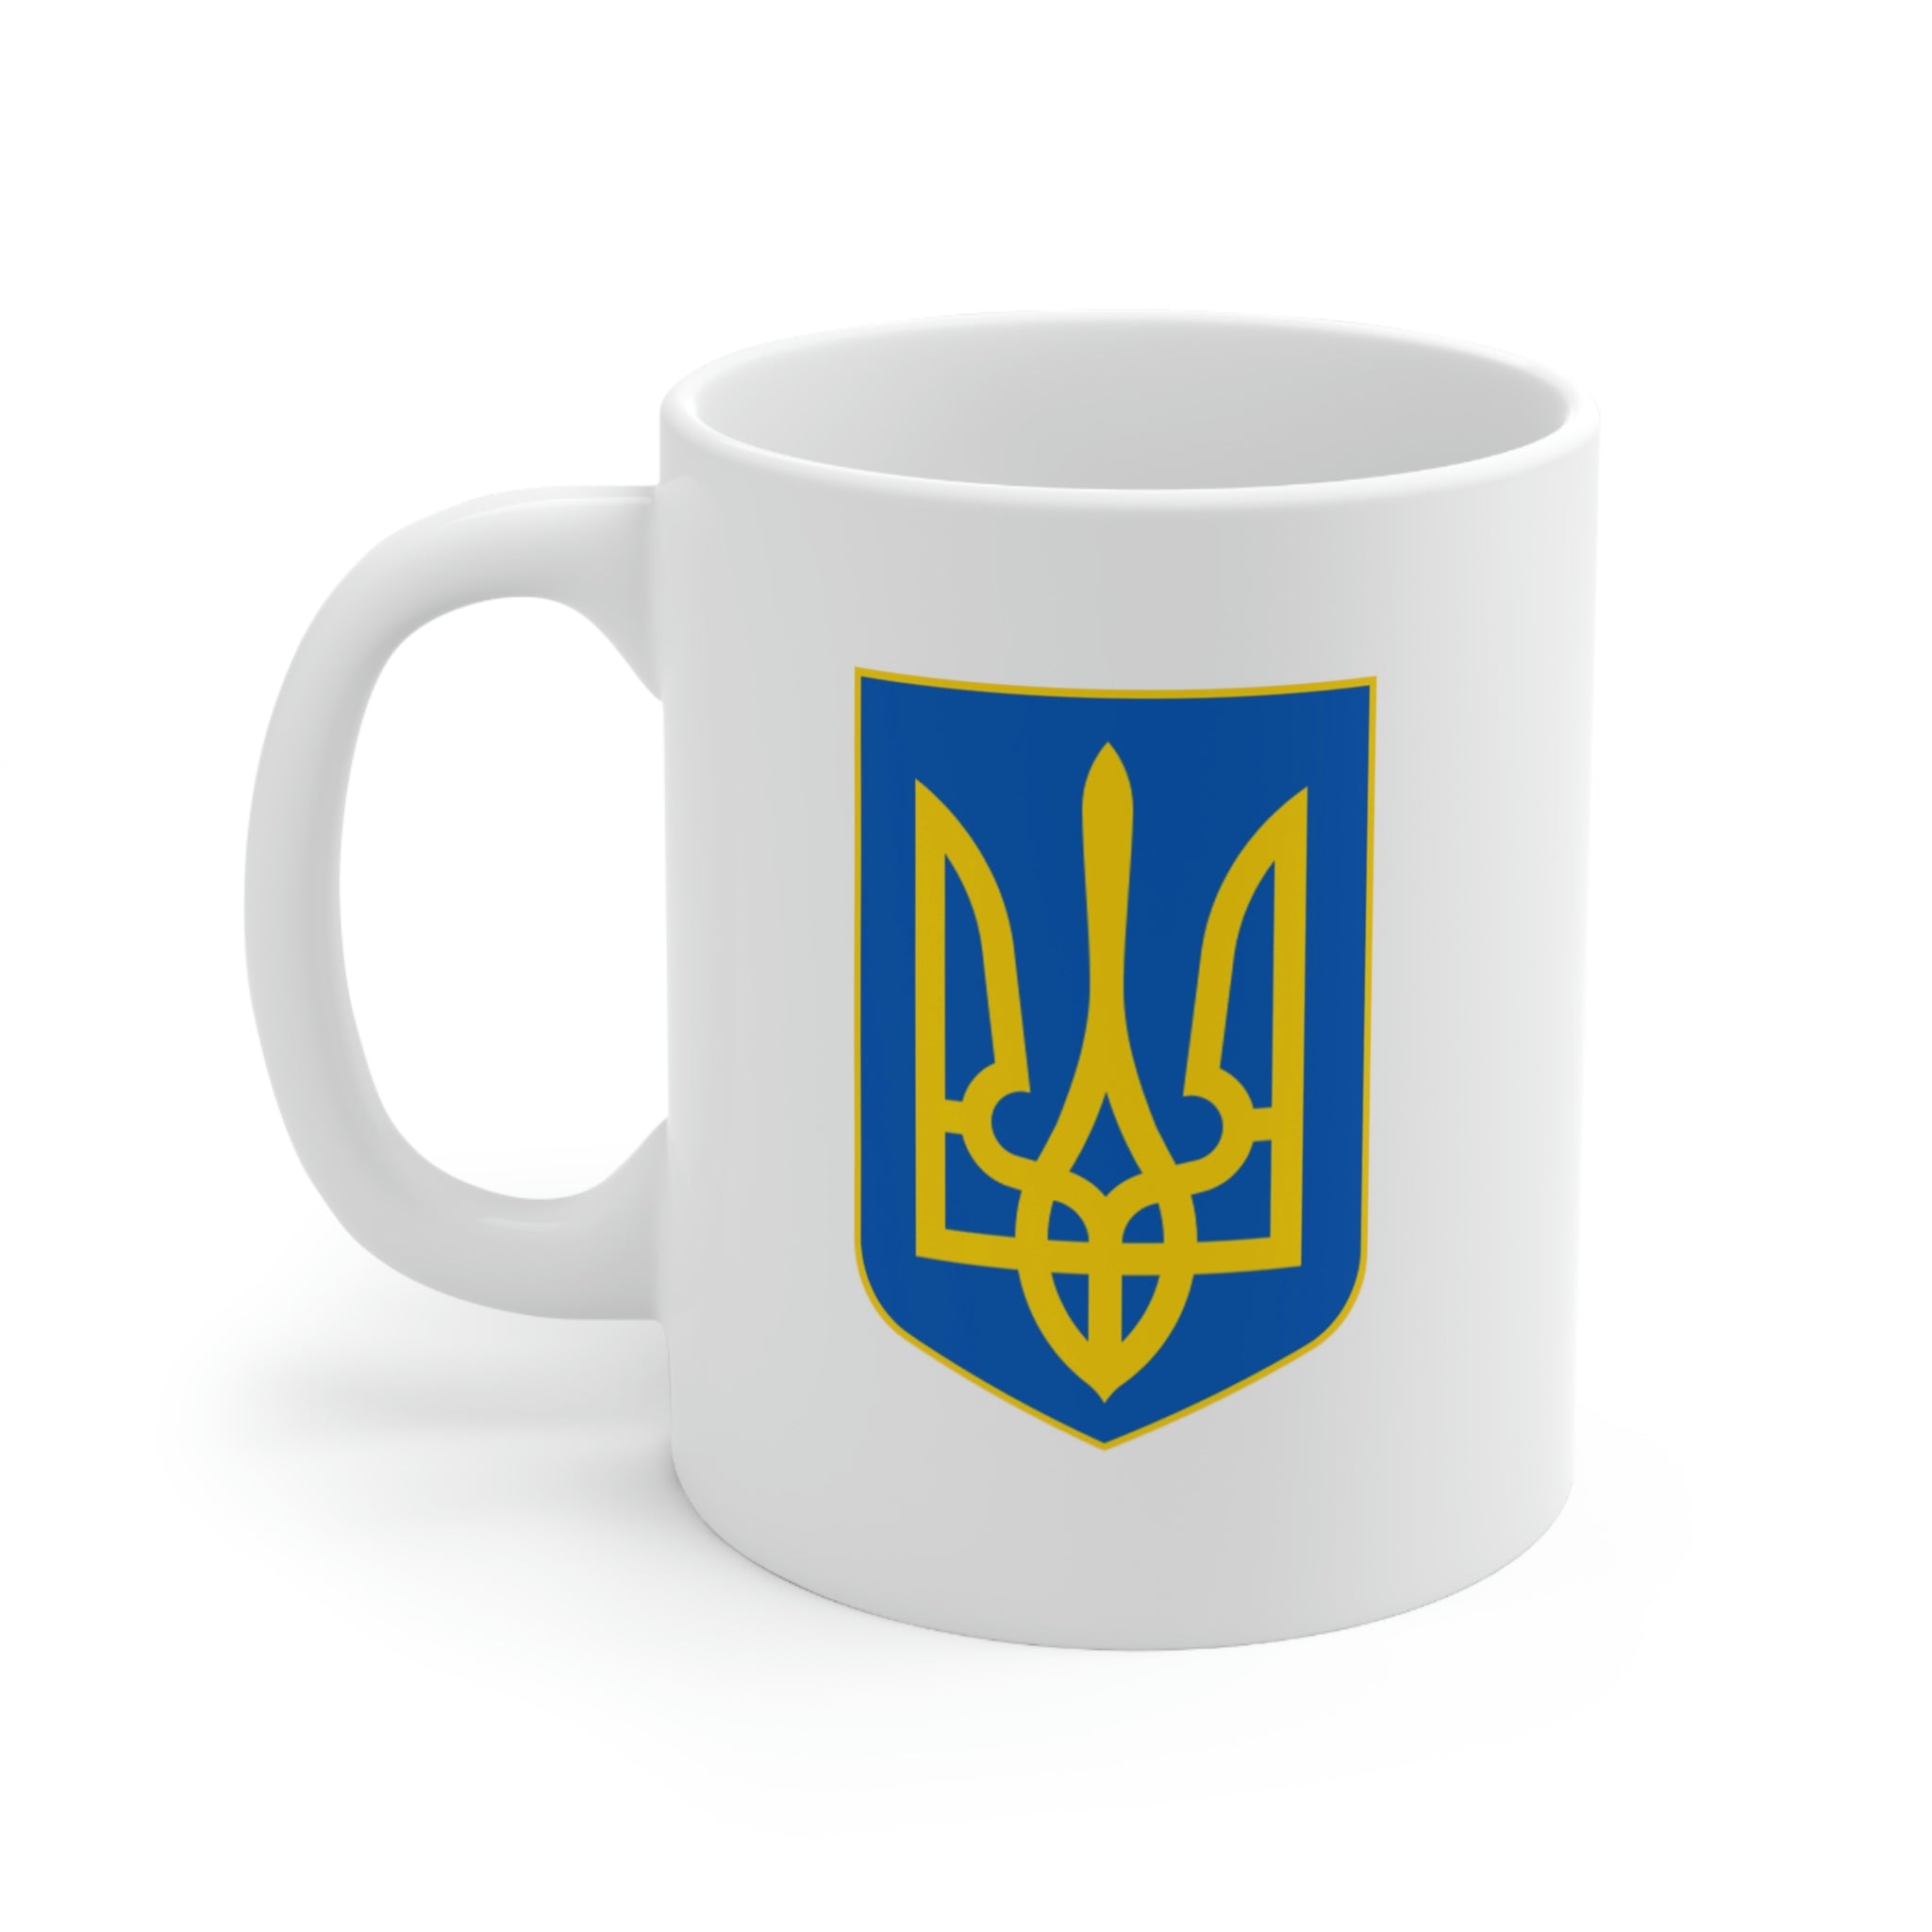 UHL Ceramic Mug 11oz